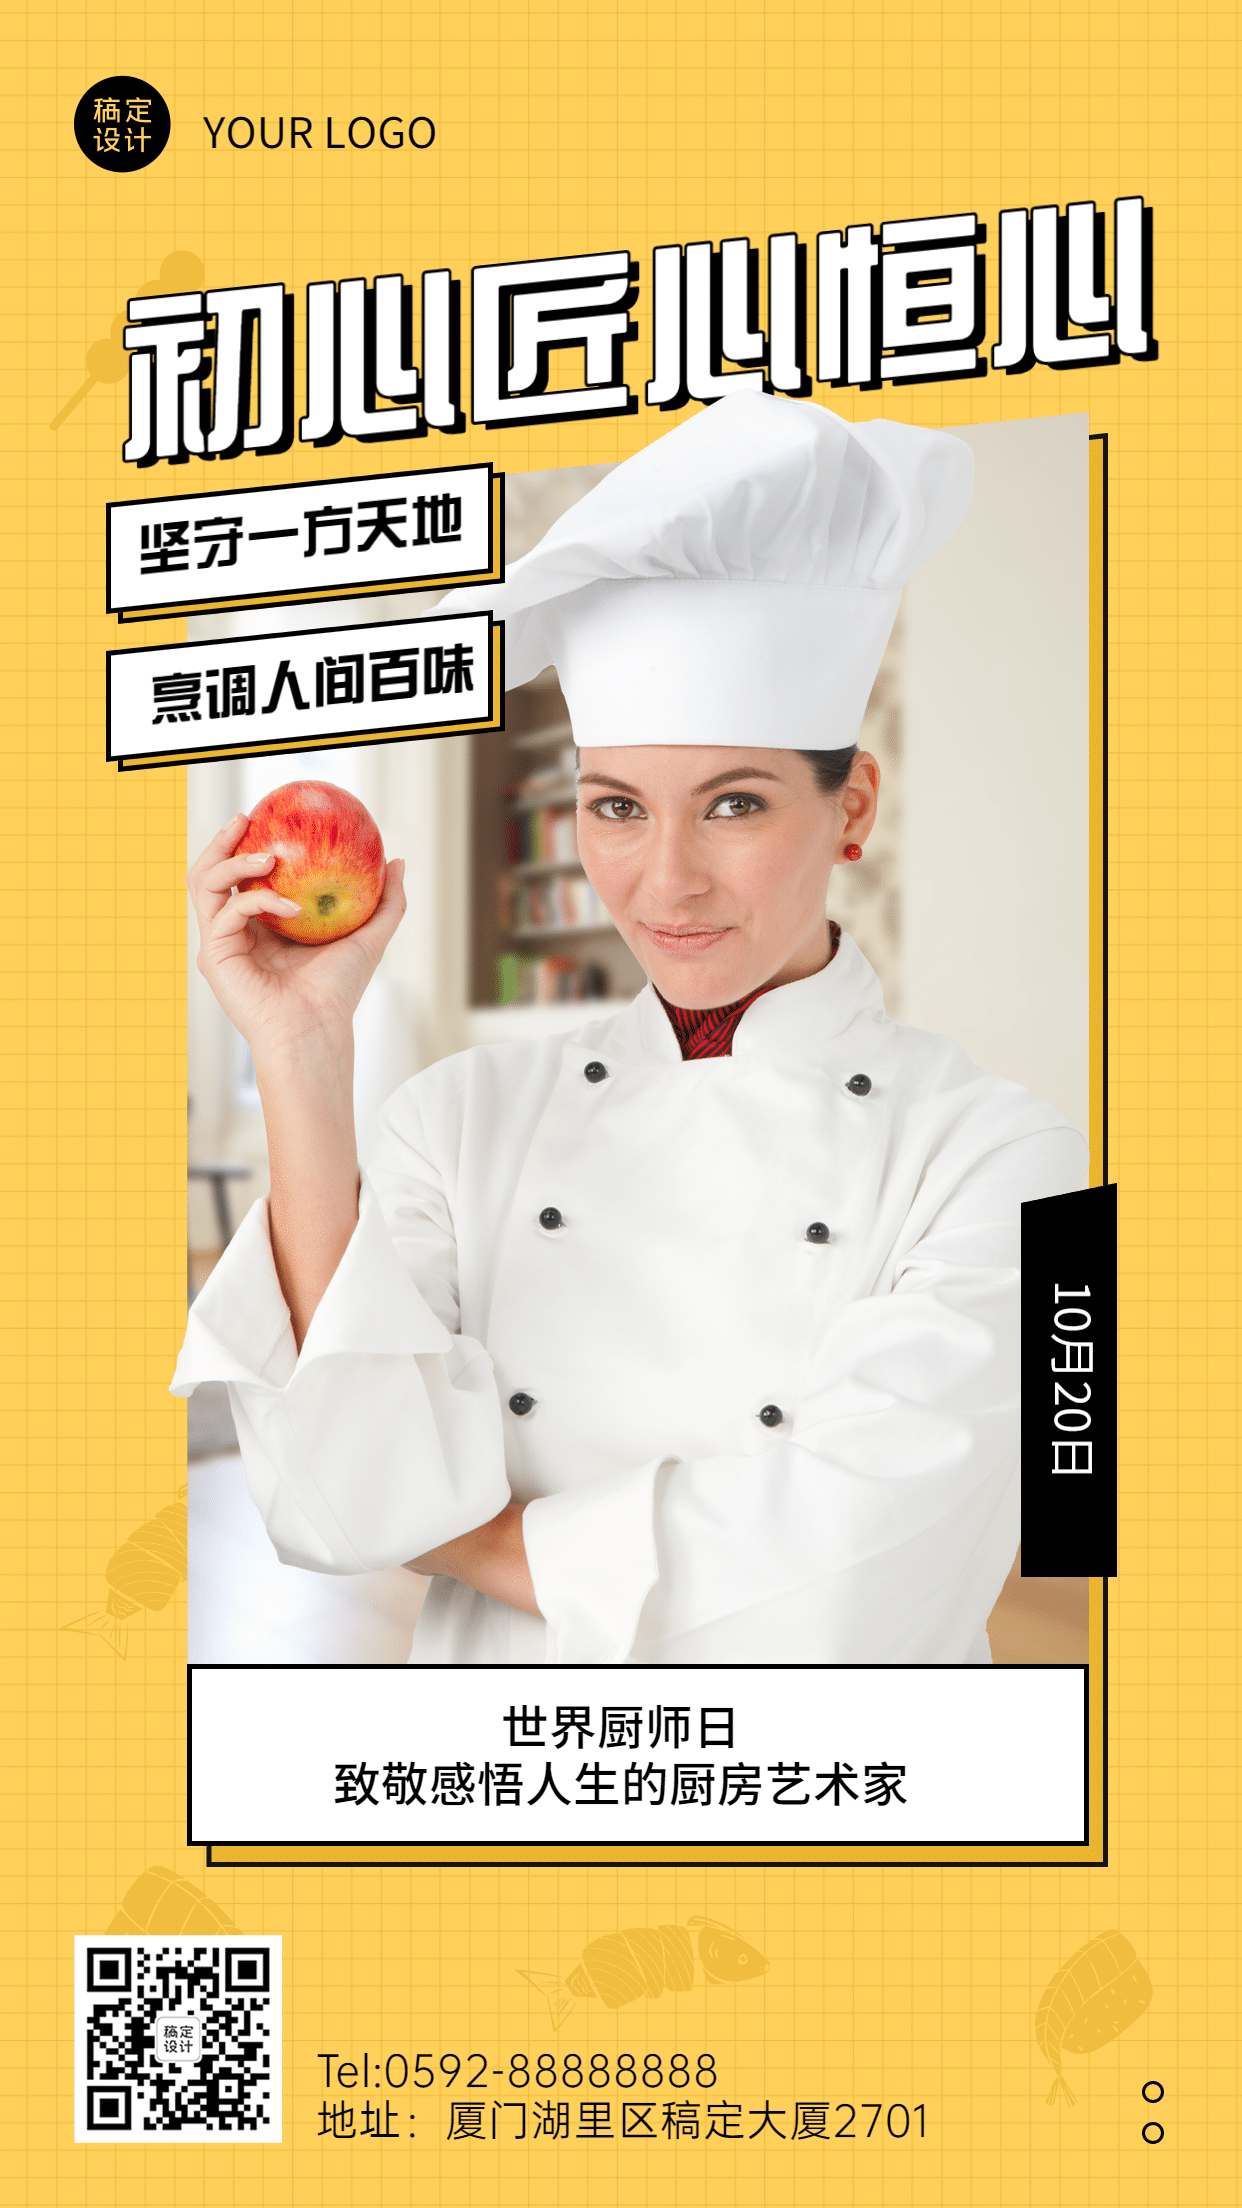 世界厨师日美味美食厨艺烹饪节日祝福创意海报预览效果